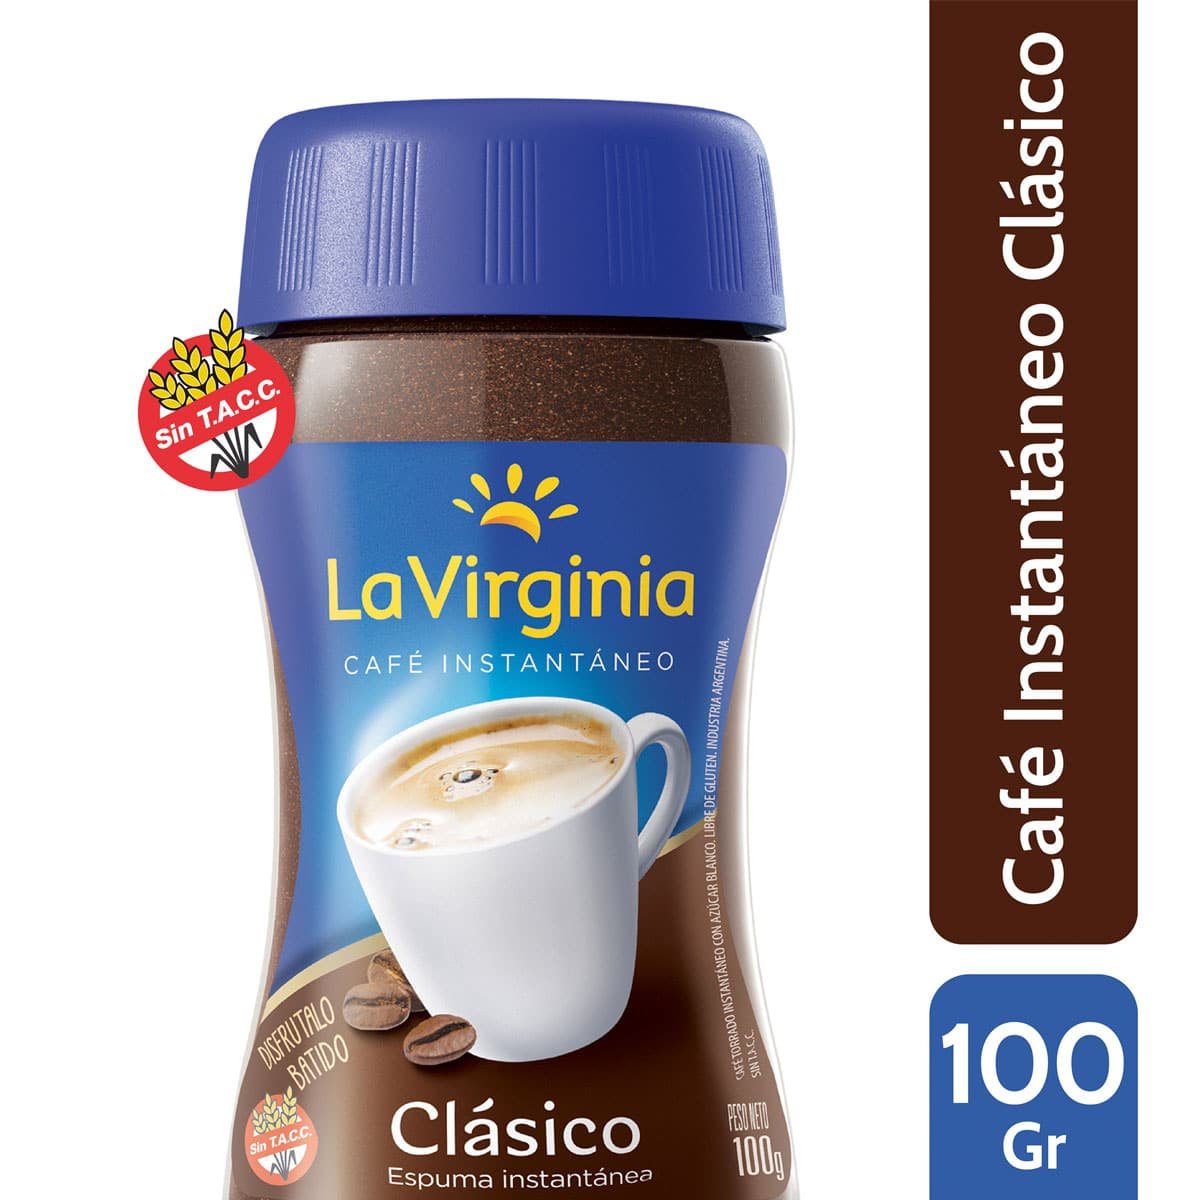 Cafe La Virginia Instantaneo Clasico x 100 grs